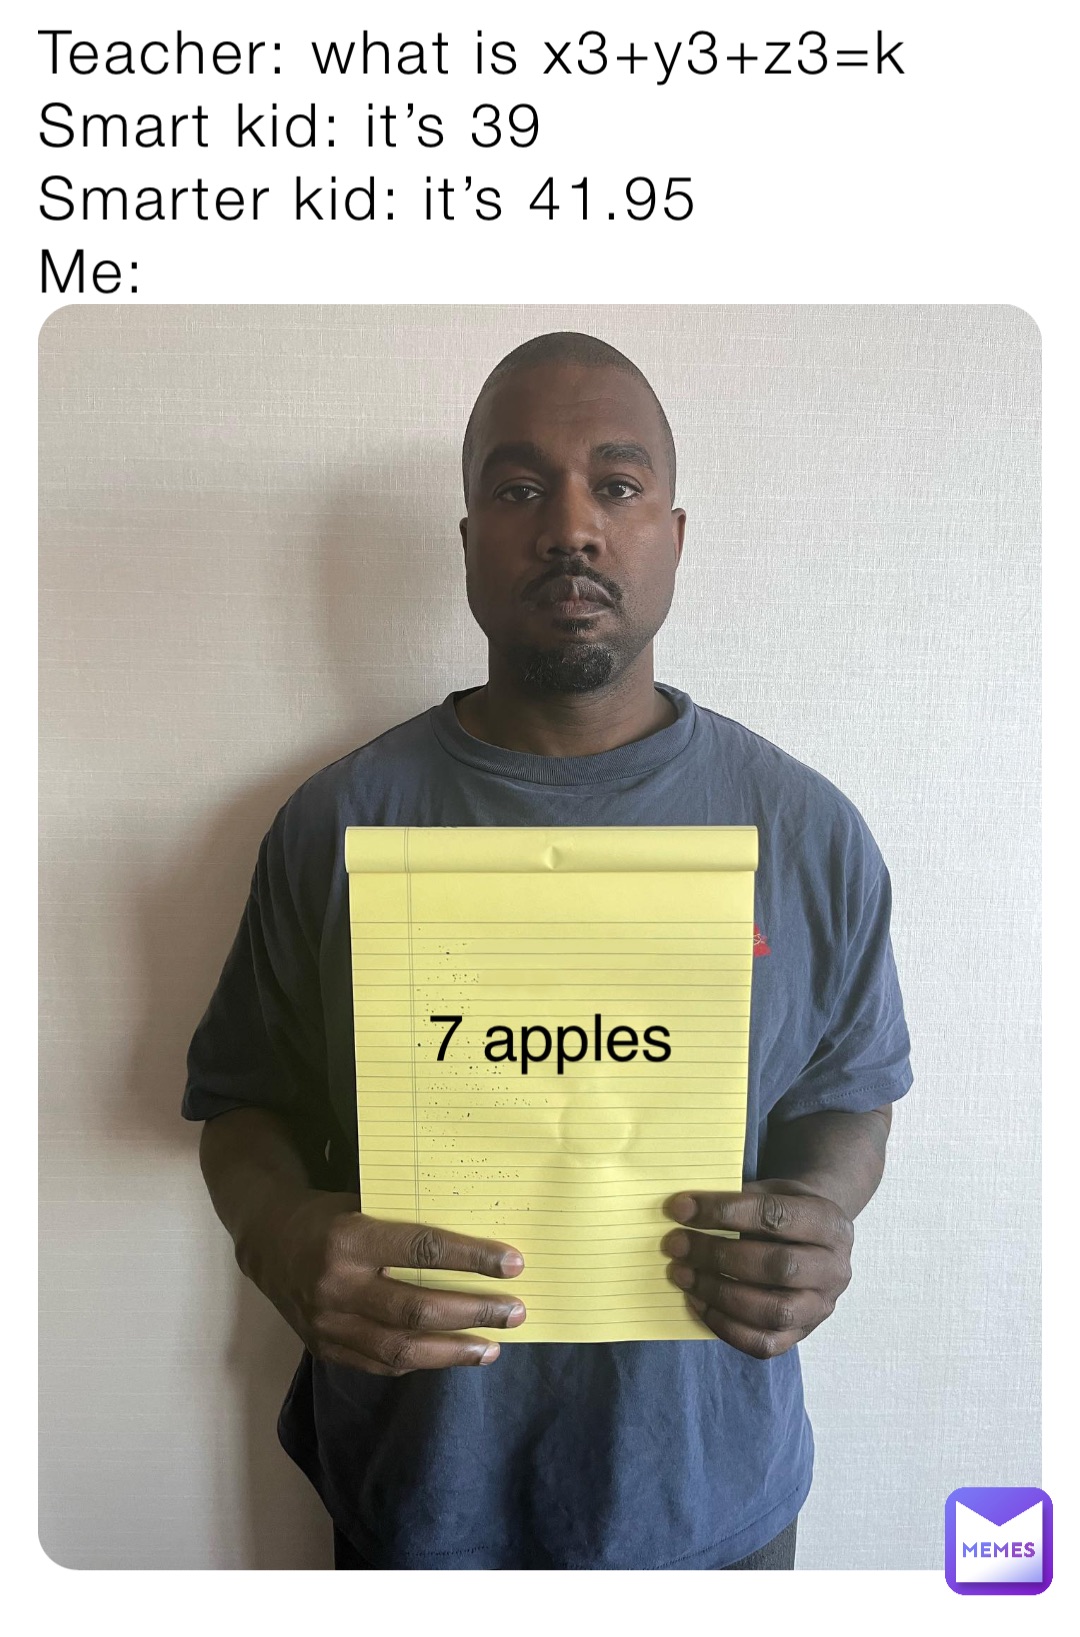 Teacher: what is x3+y3+z3=k
Smart kid: it’s 39
Smarter kid: it’s 41.95
Me: 7 apples